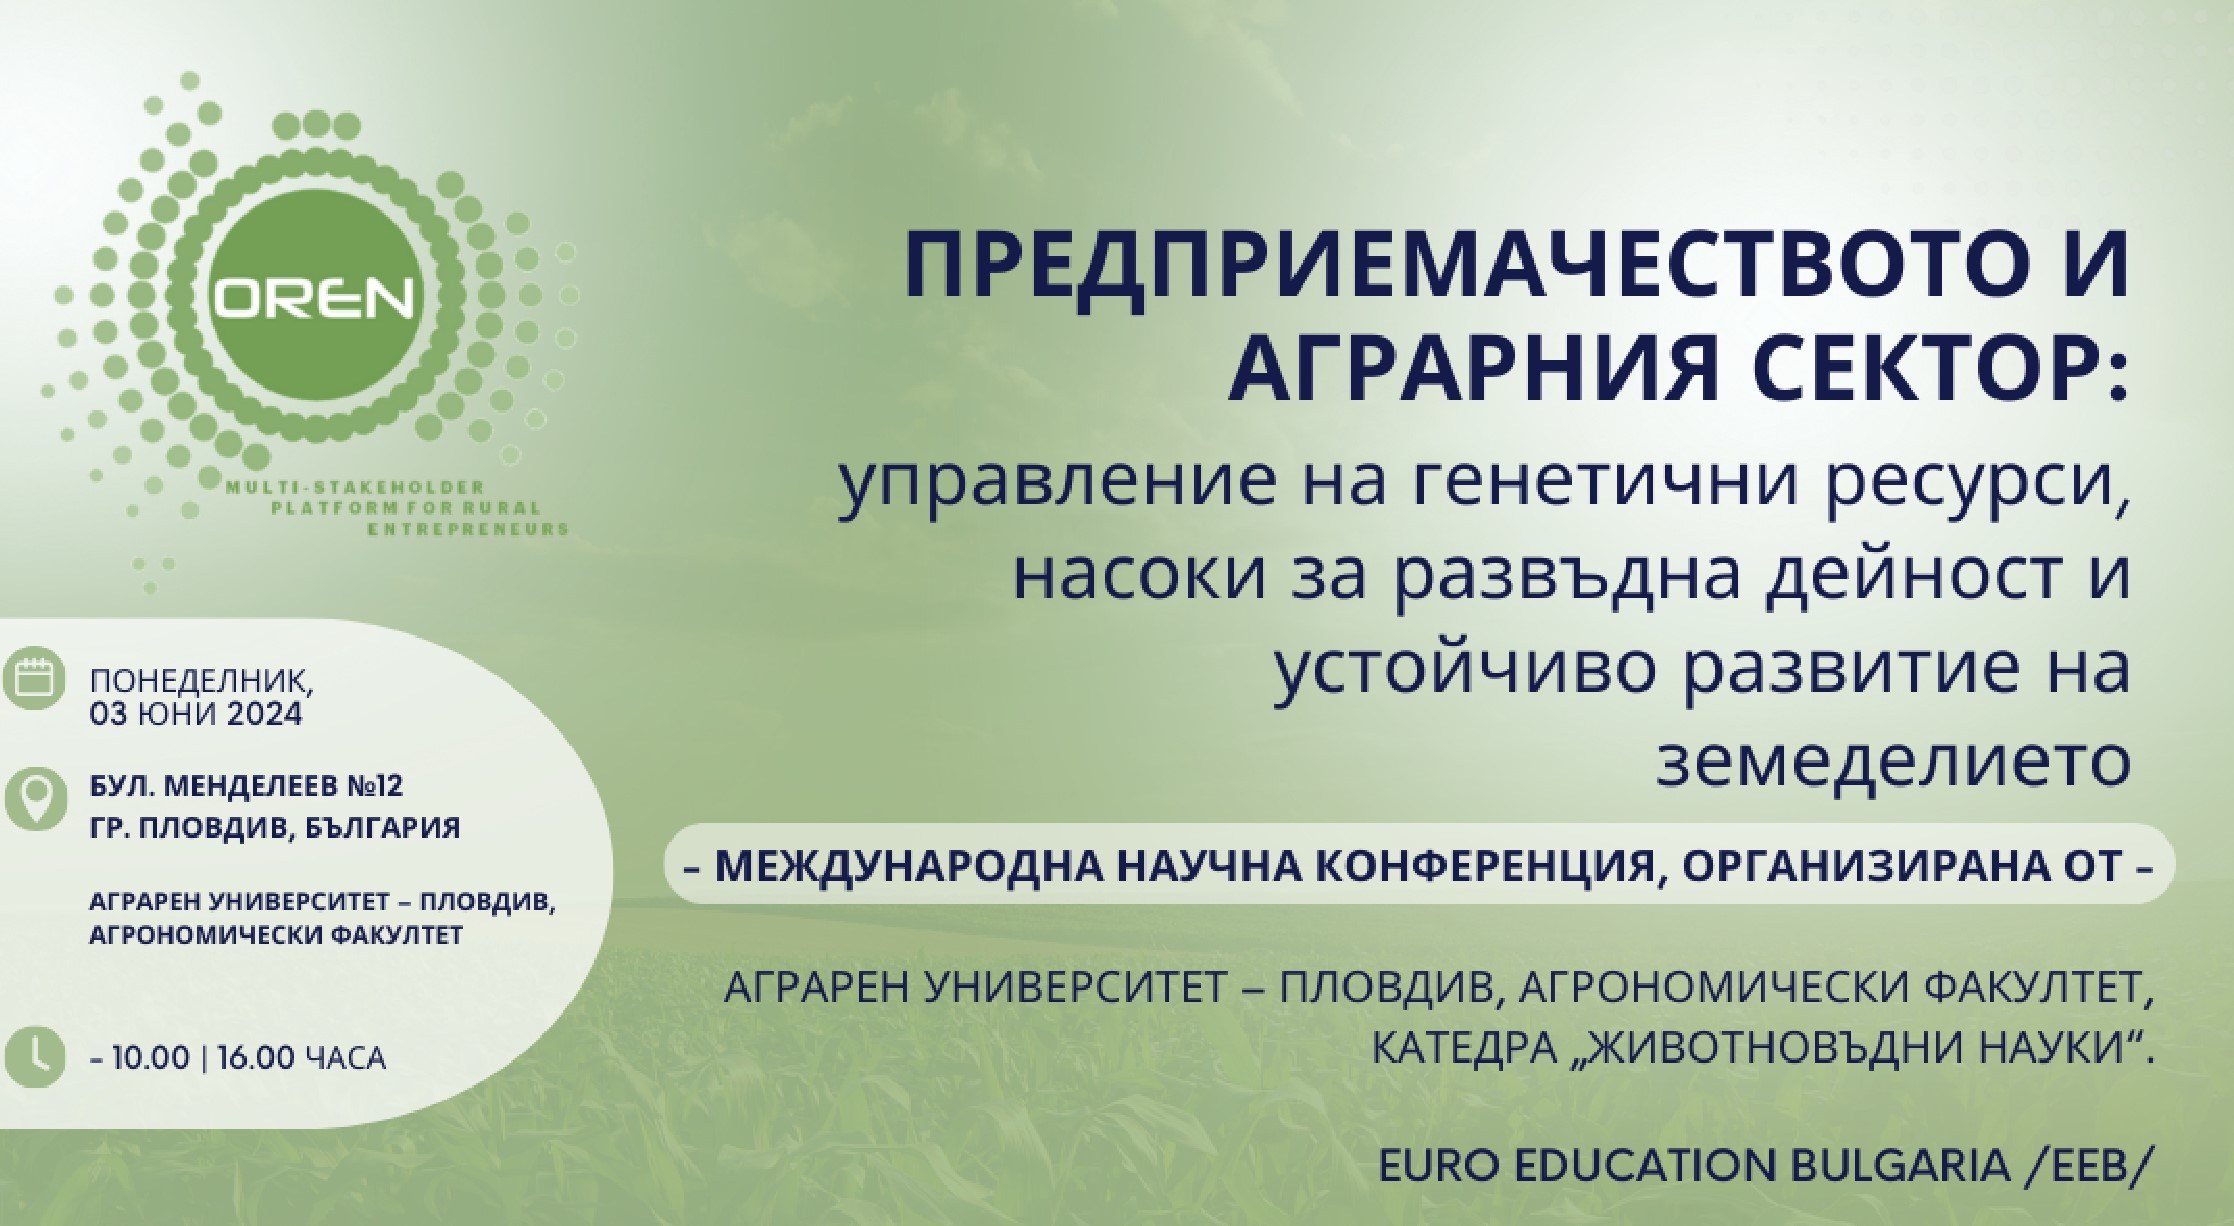 Катедра " Животновъдни науки " към Аграрен университет - Пловдив организира Международна научна конференция